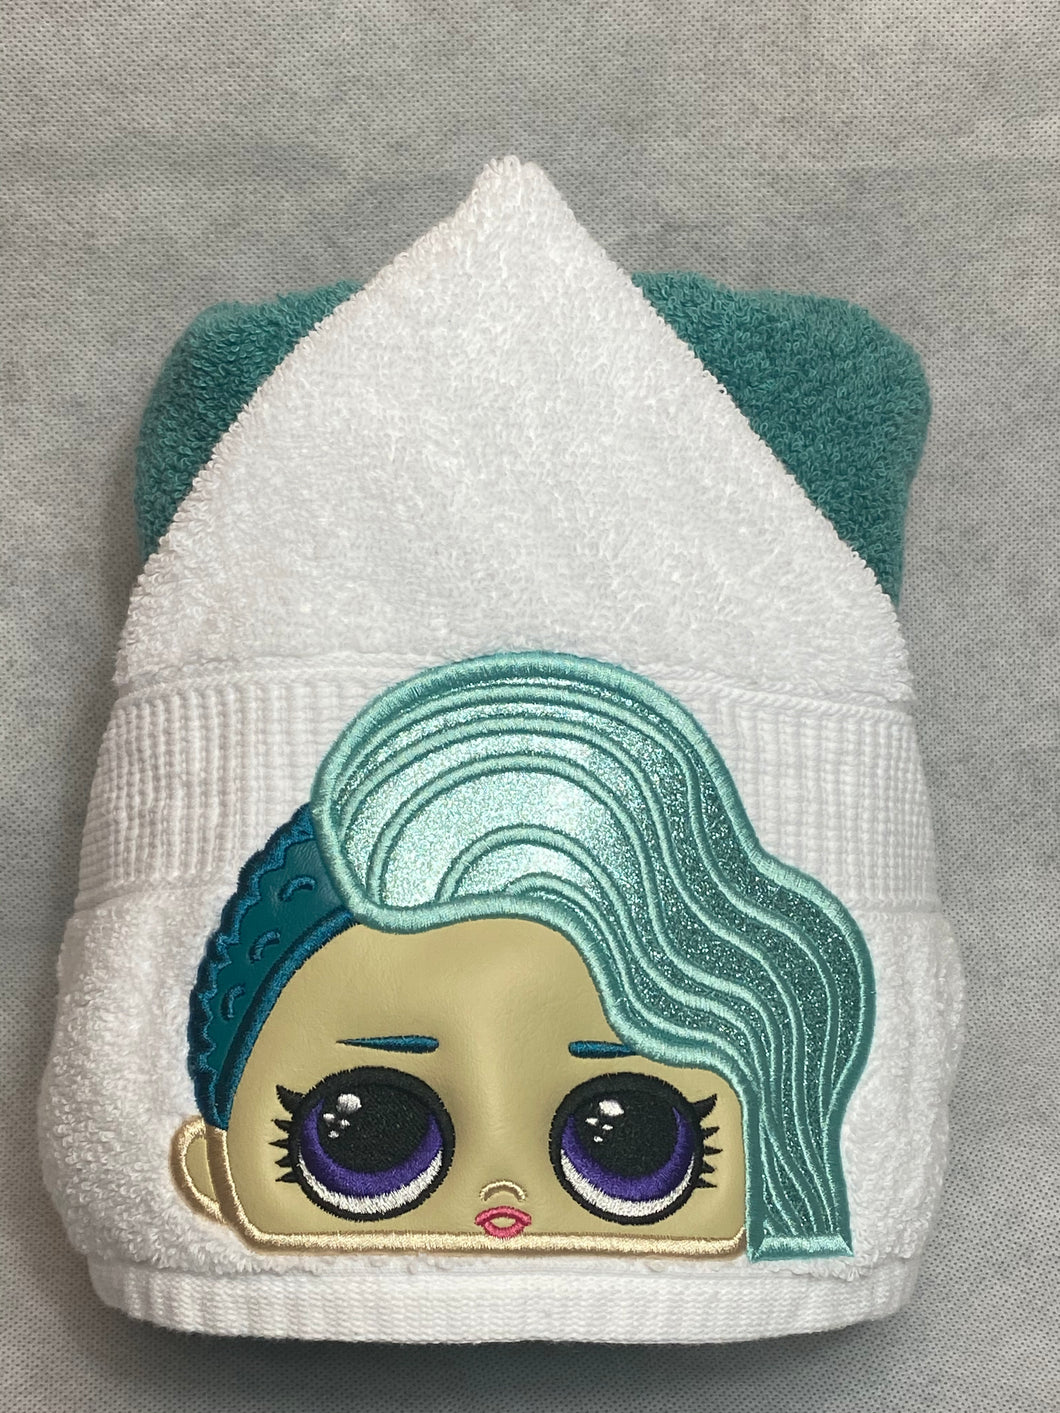 Mermaid girl character hooded towel